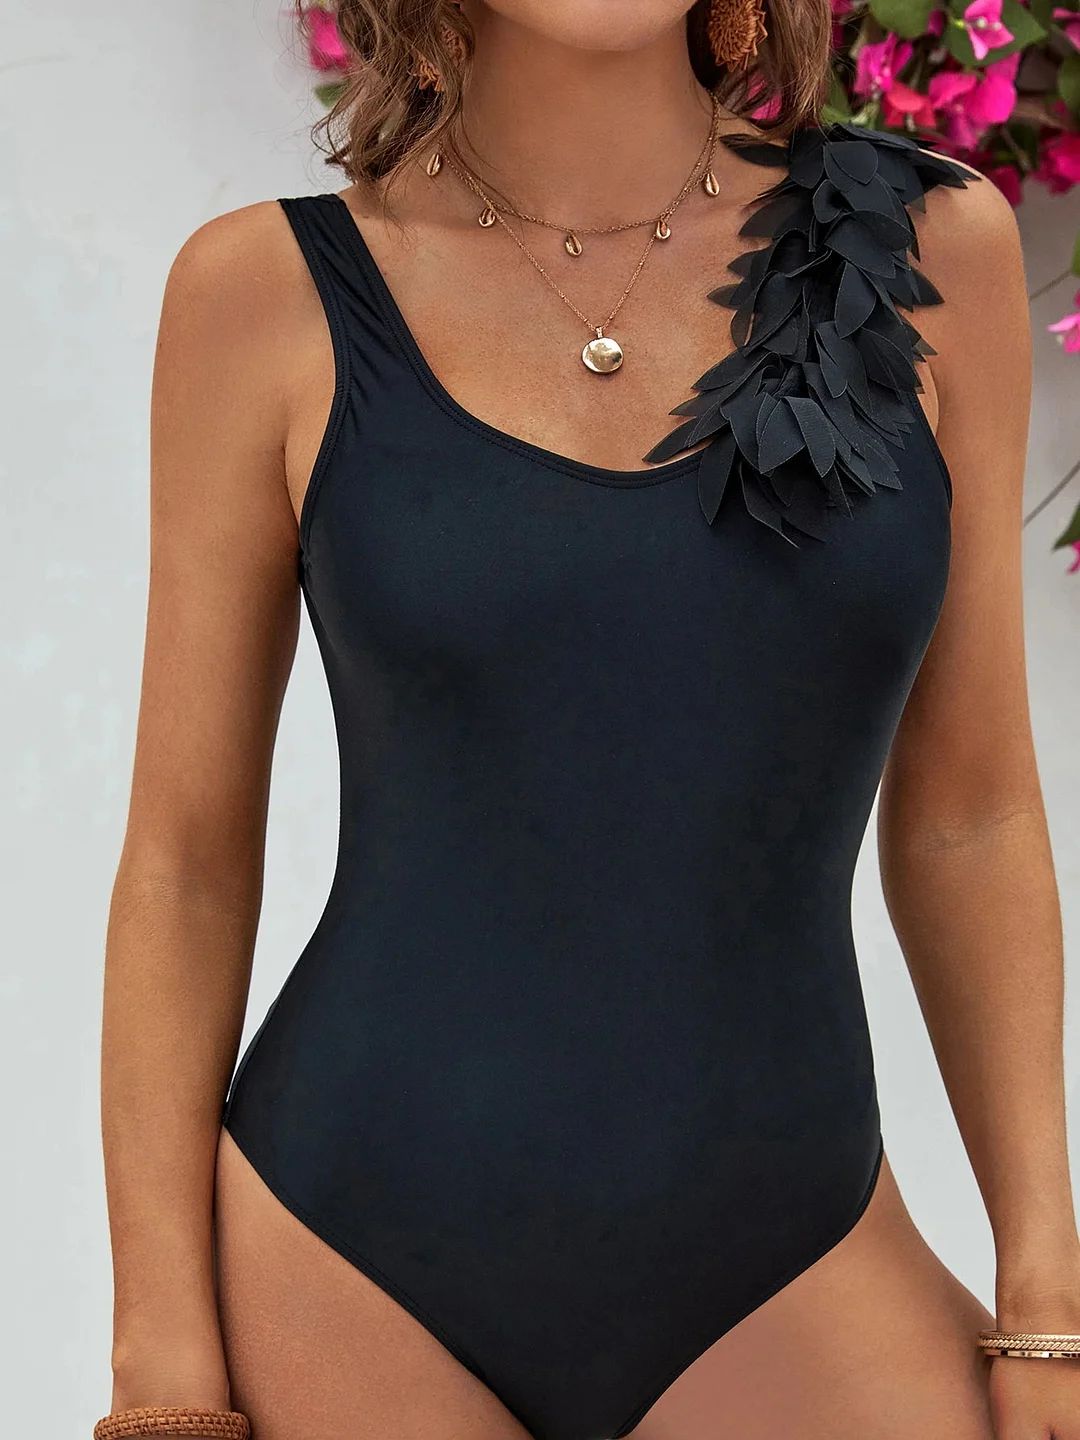 Huiketi Backless Swimsuit y2k One Piece Swimwear Women Ruffled Strappy Bathing Suit Shirring Backless Beach Wear